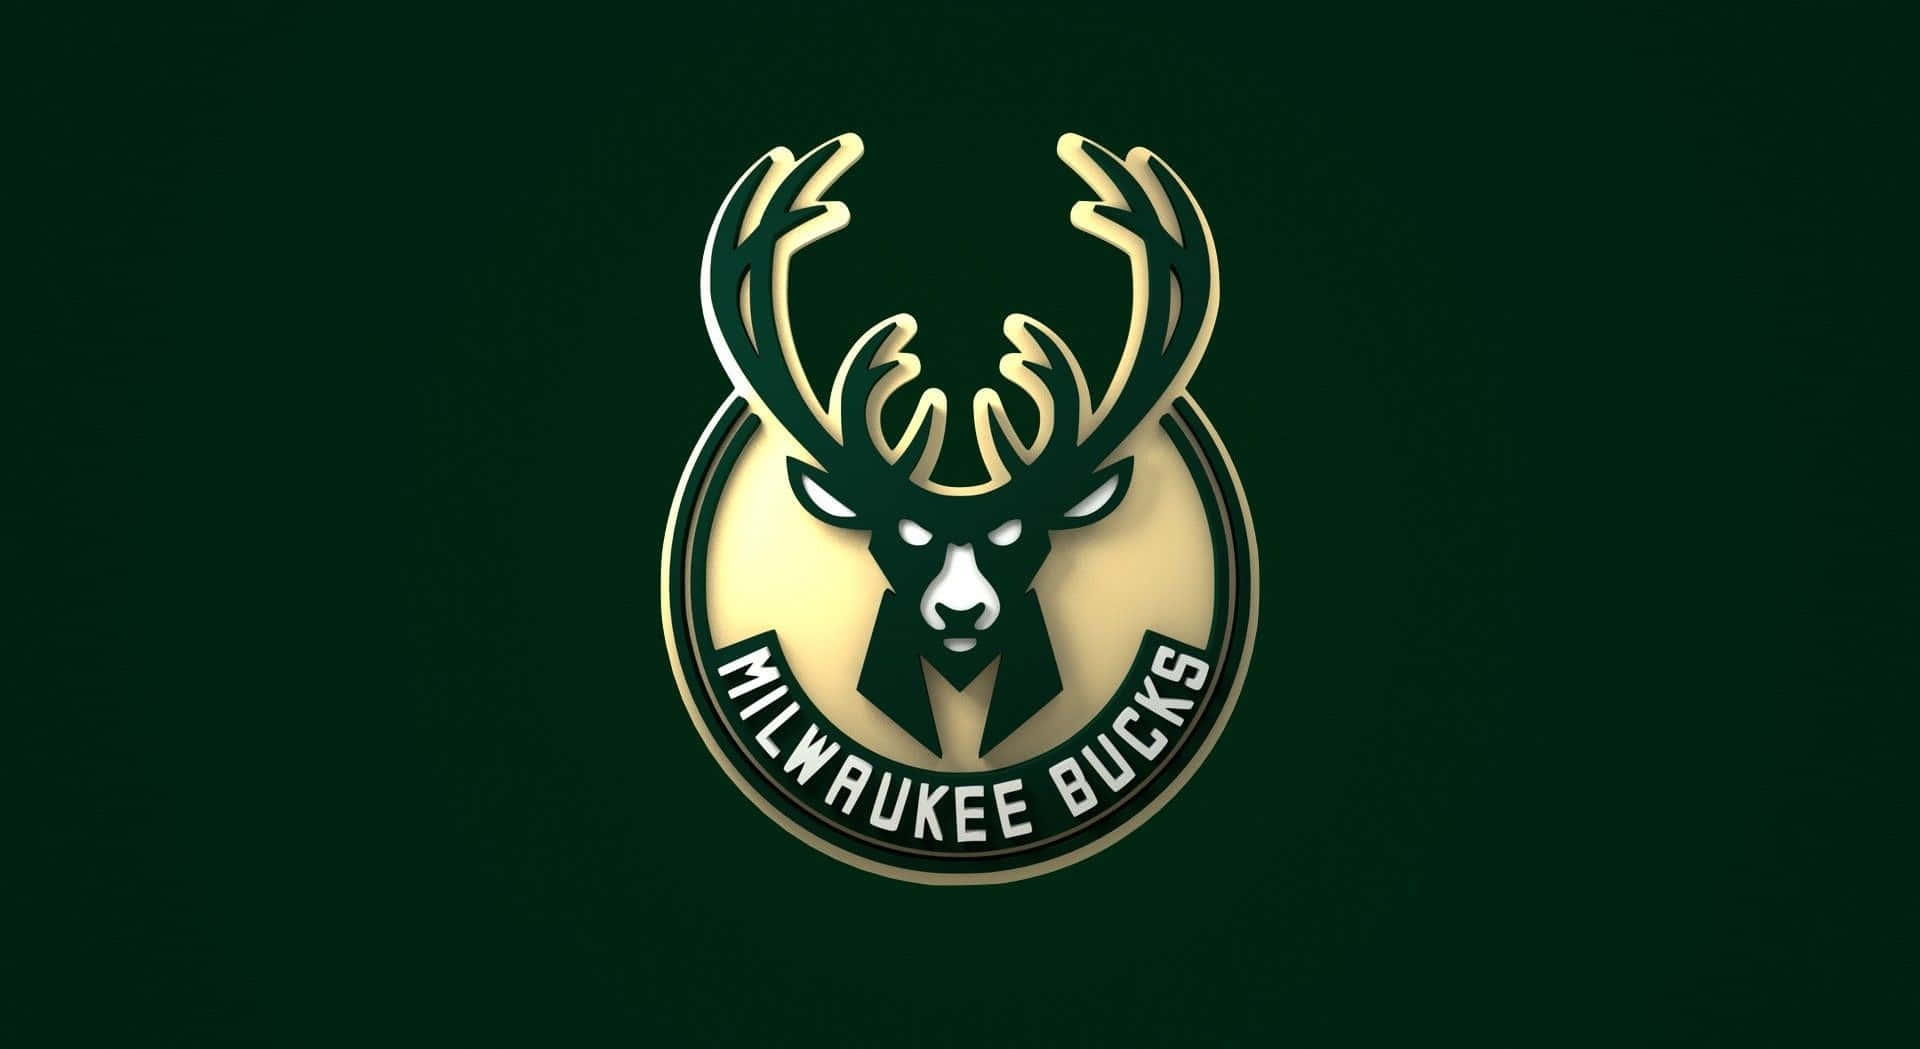 Logoet for Milwaukee Bucks, der repræsenterer et ikonisk sportshold i NBA. Wallpaper